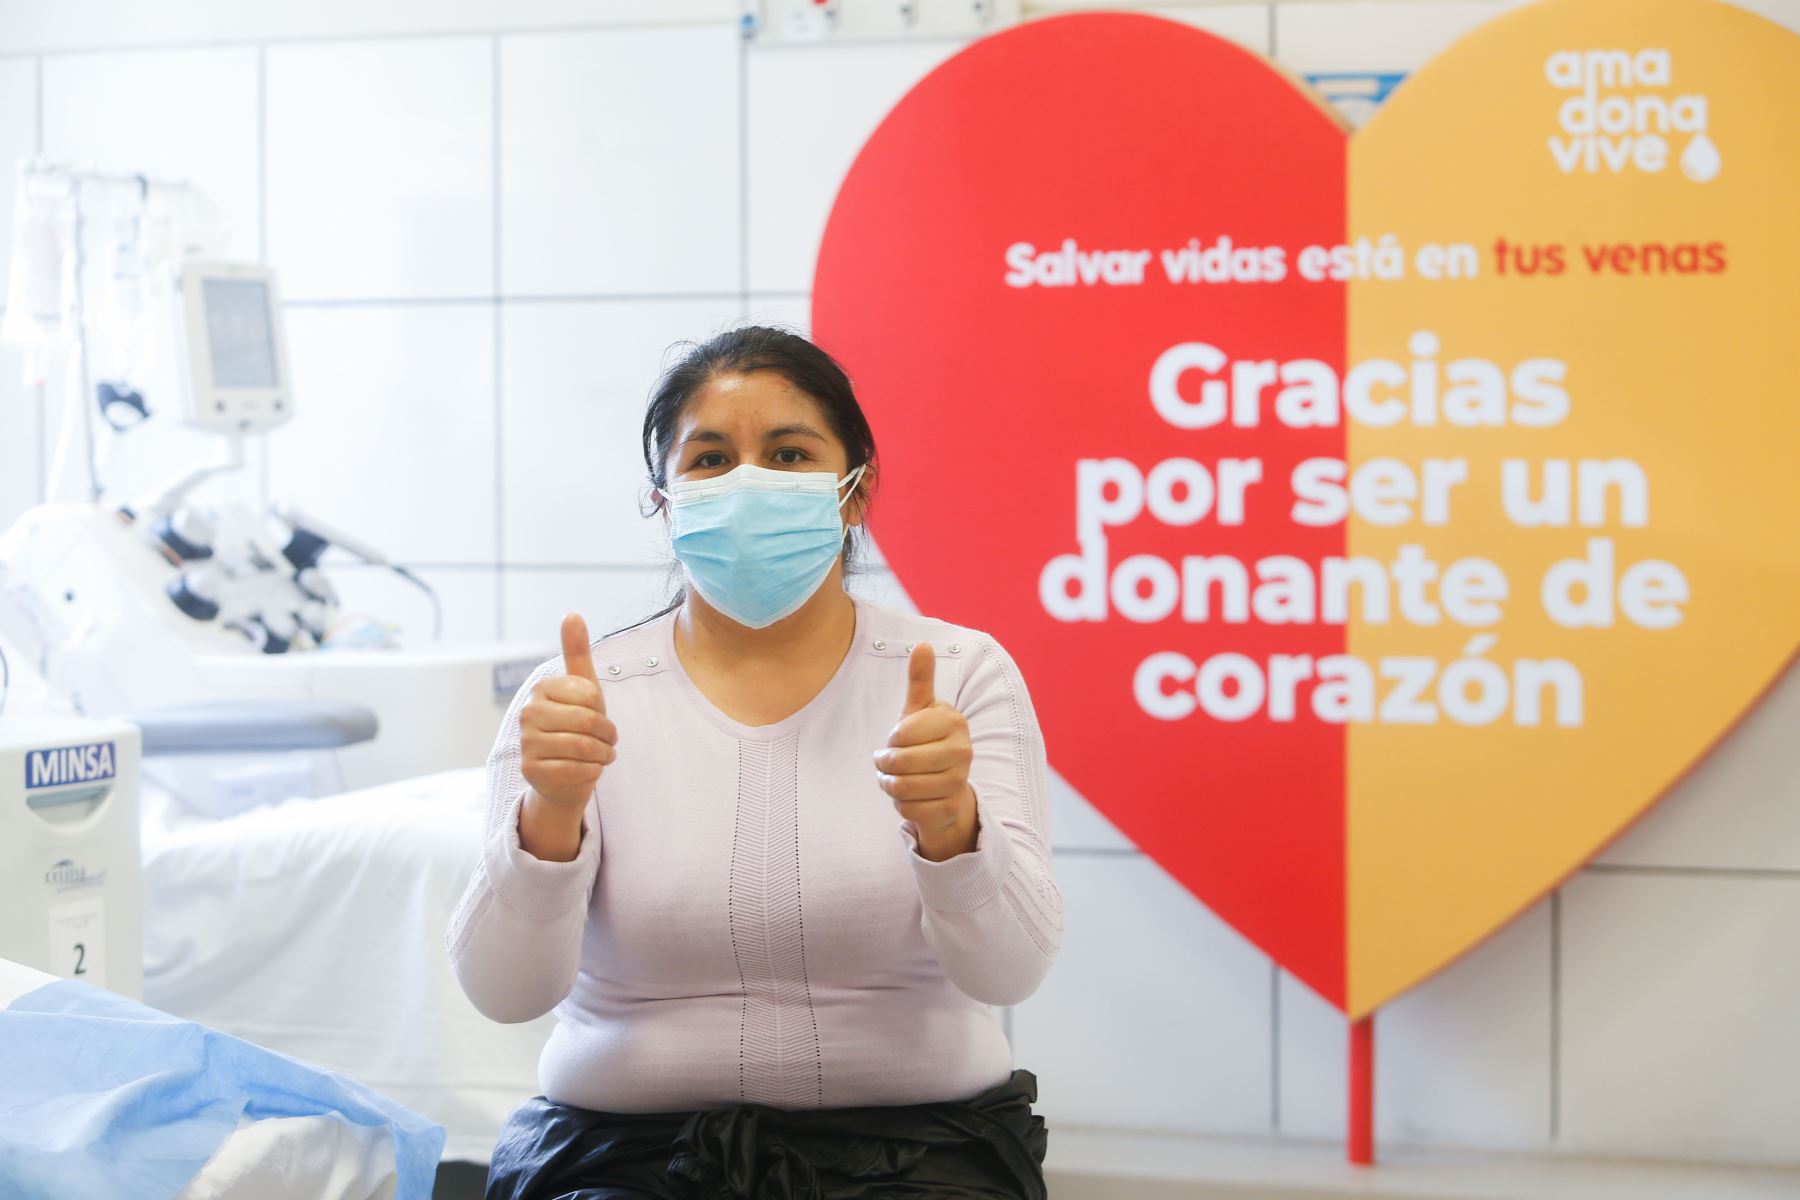 Ministro de Salud, Óscar Ugarte, en el marco del día mundial del donante de sangre, inaugura la ruta del donante en el Instituto Nacional de Salud del Niño - San Borja.
Foto: Minsa